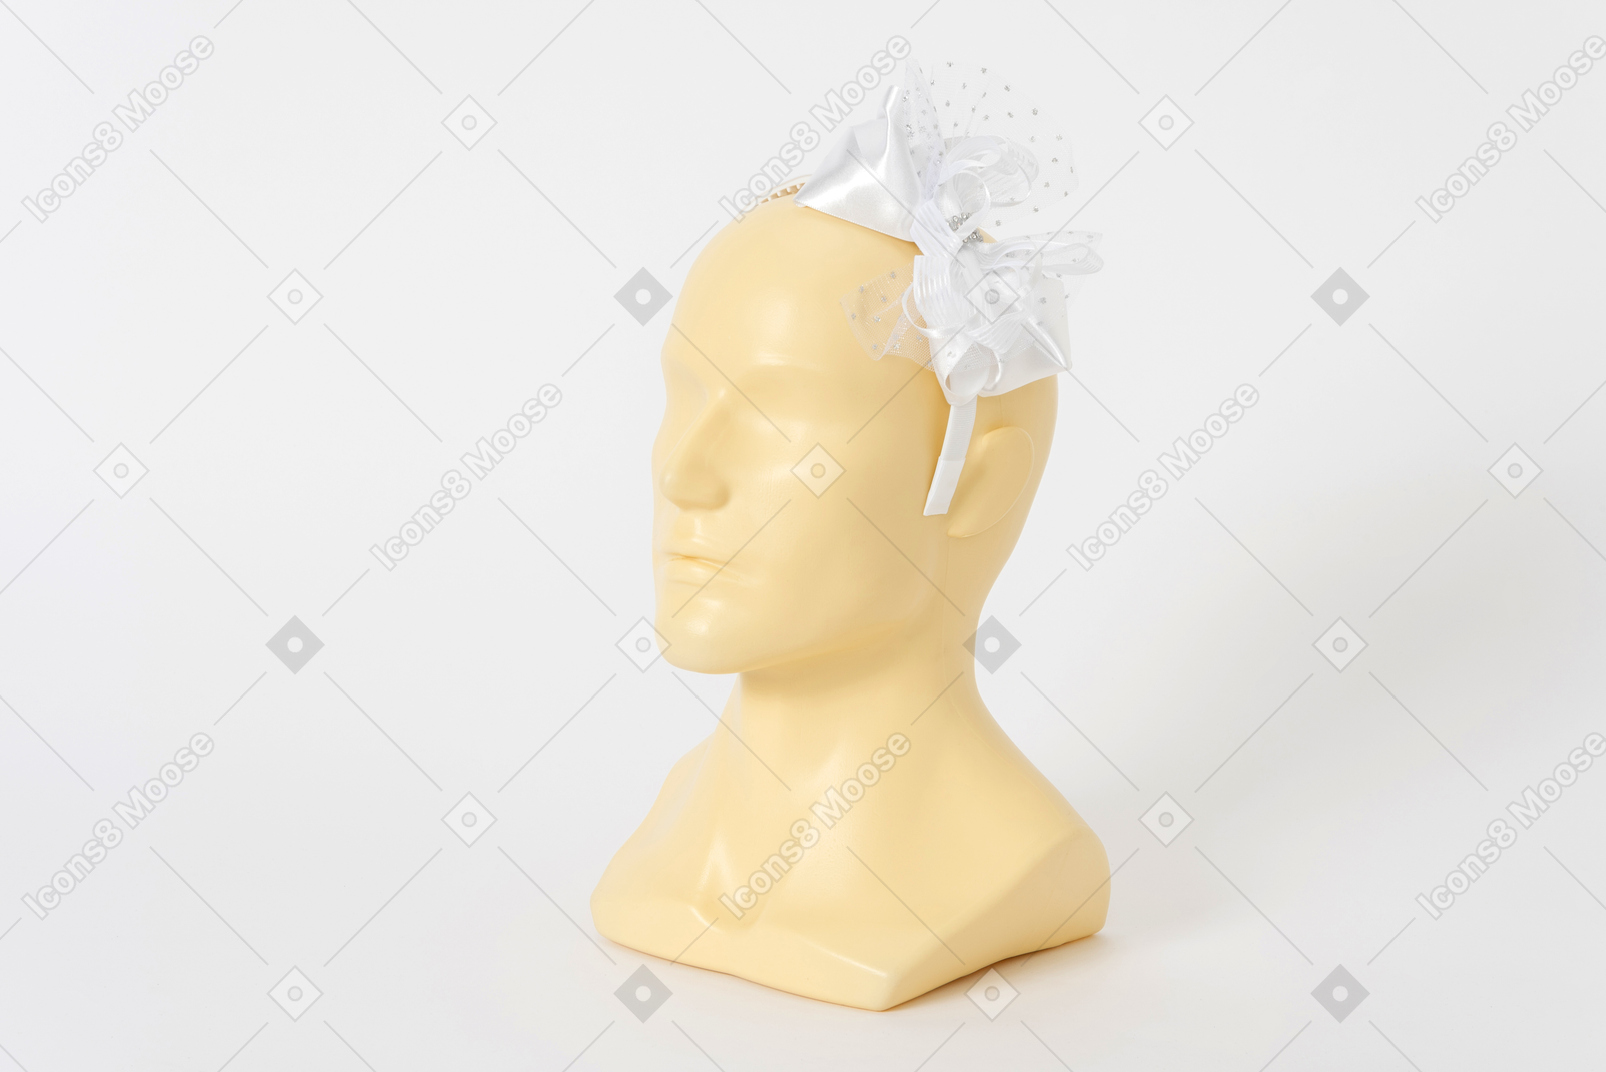 マネキンの頭の上の弓と白いヘアバンド